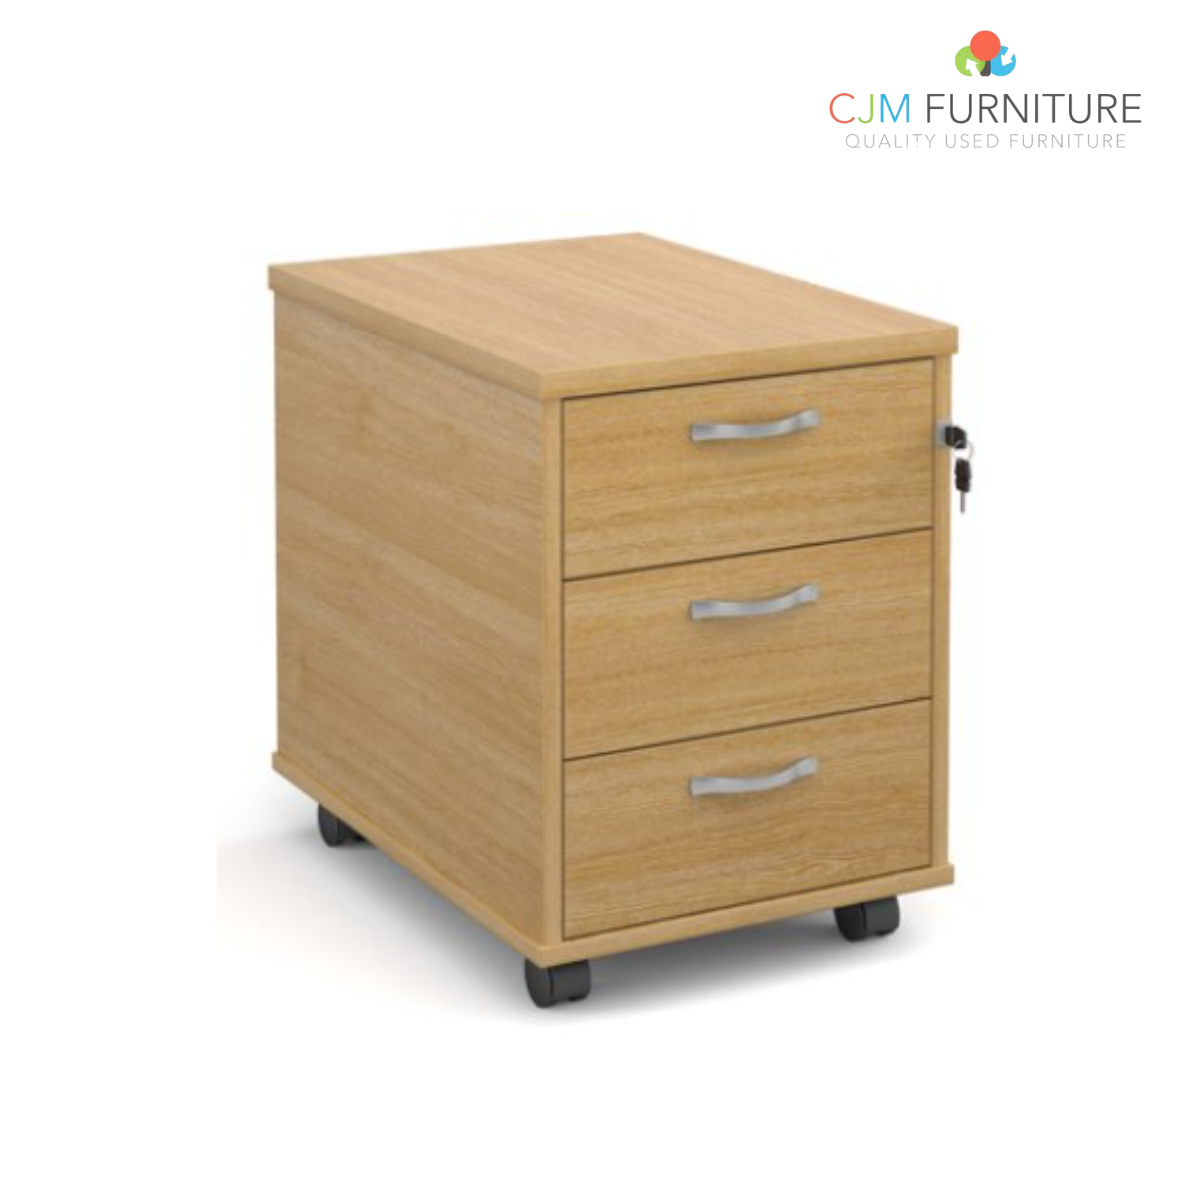 2 or 3 drawer wooden mobile pedestal